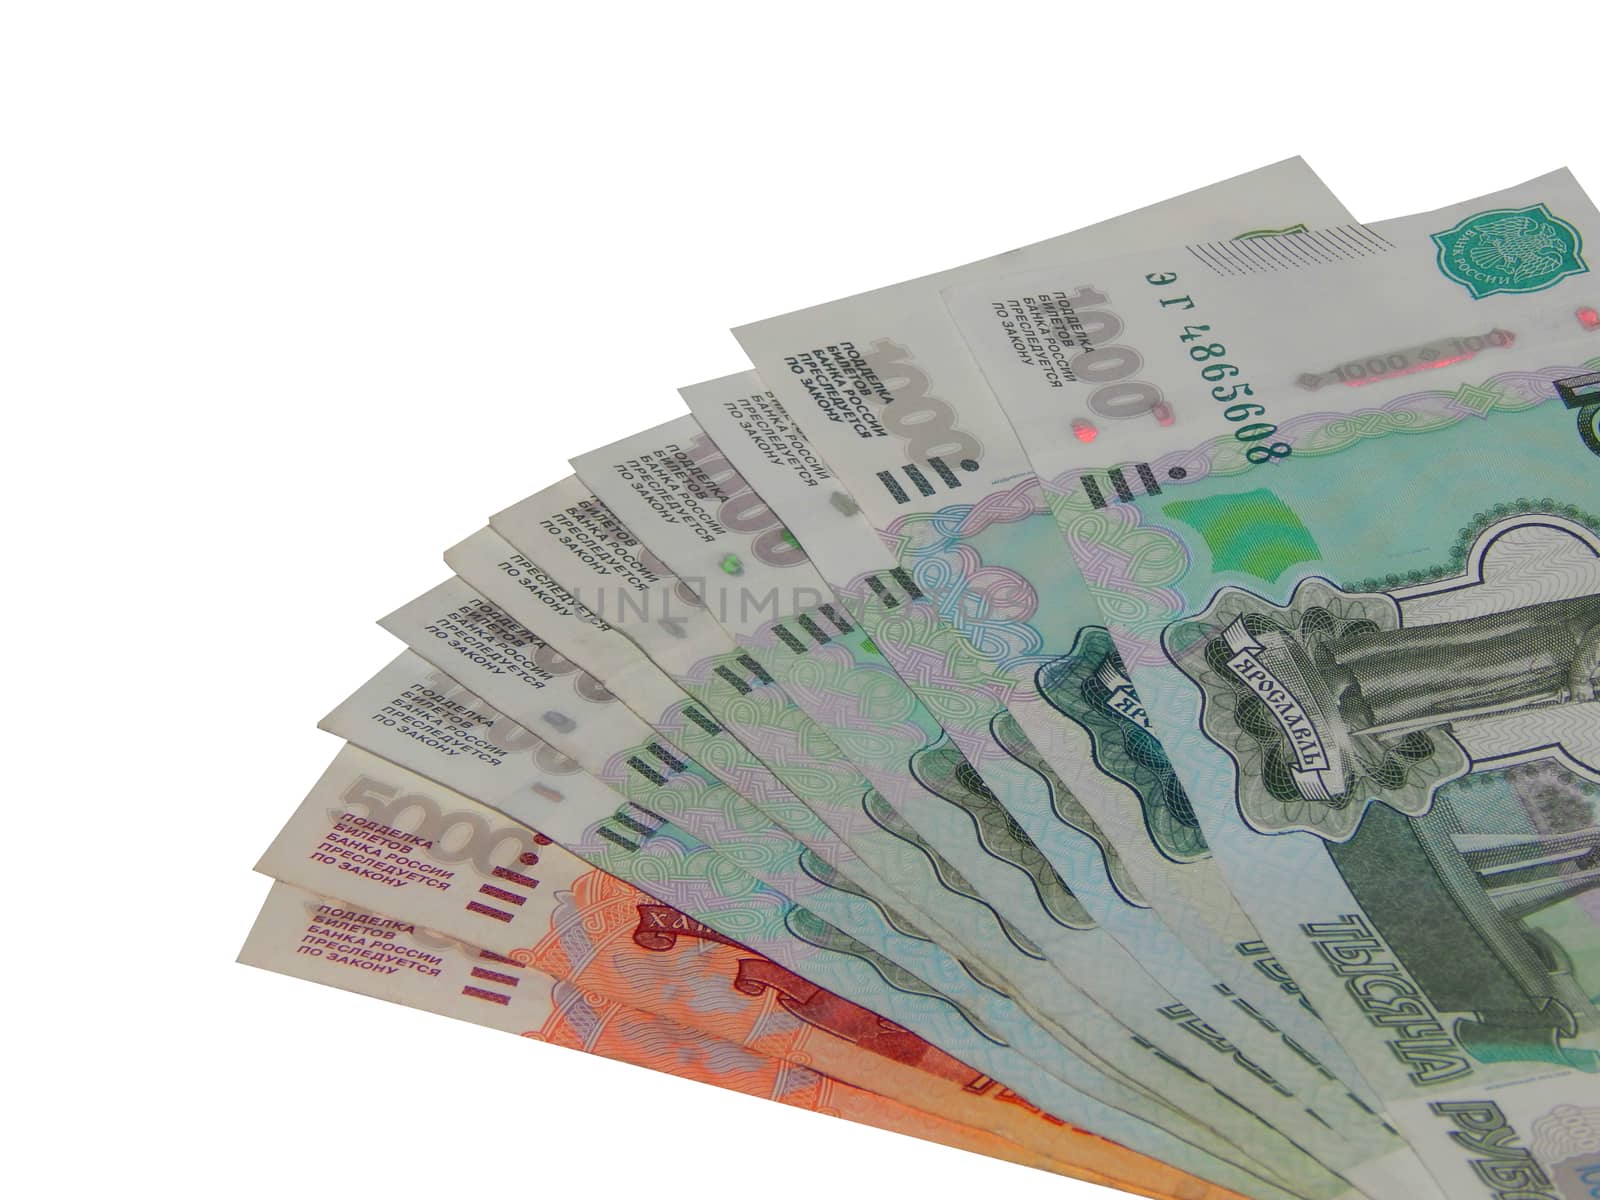 Russian money 5000 rubles by kimbelij